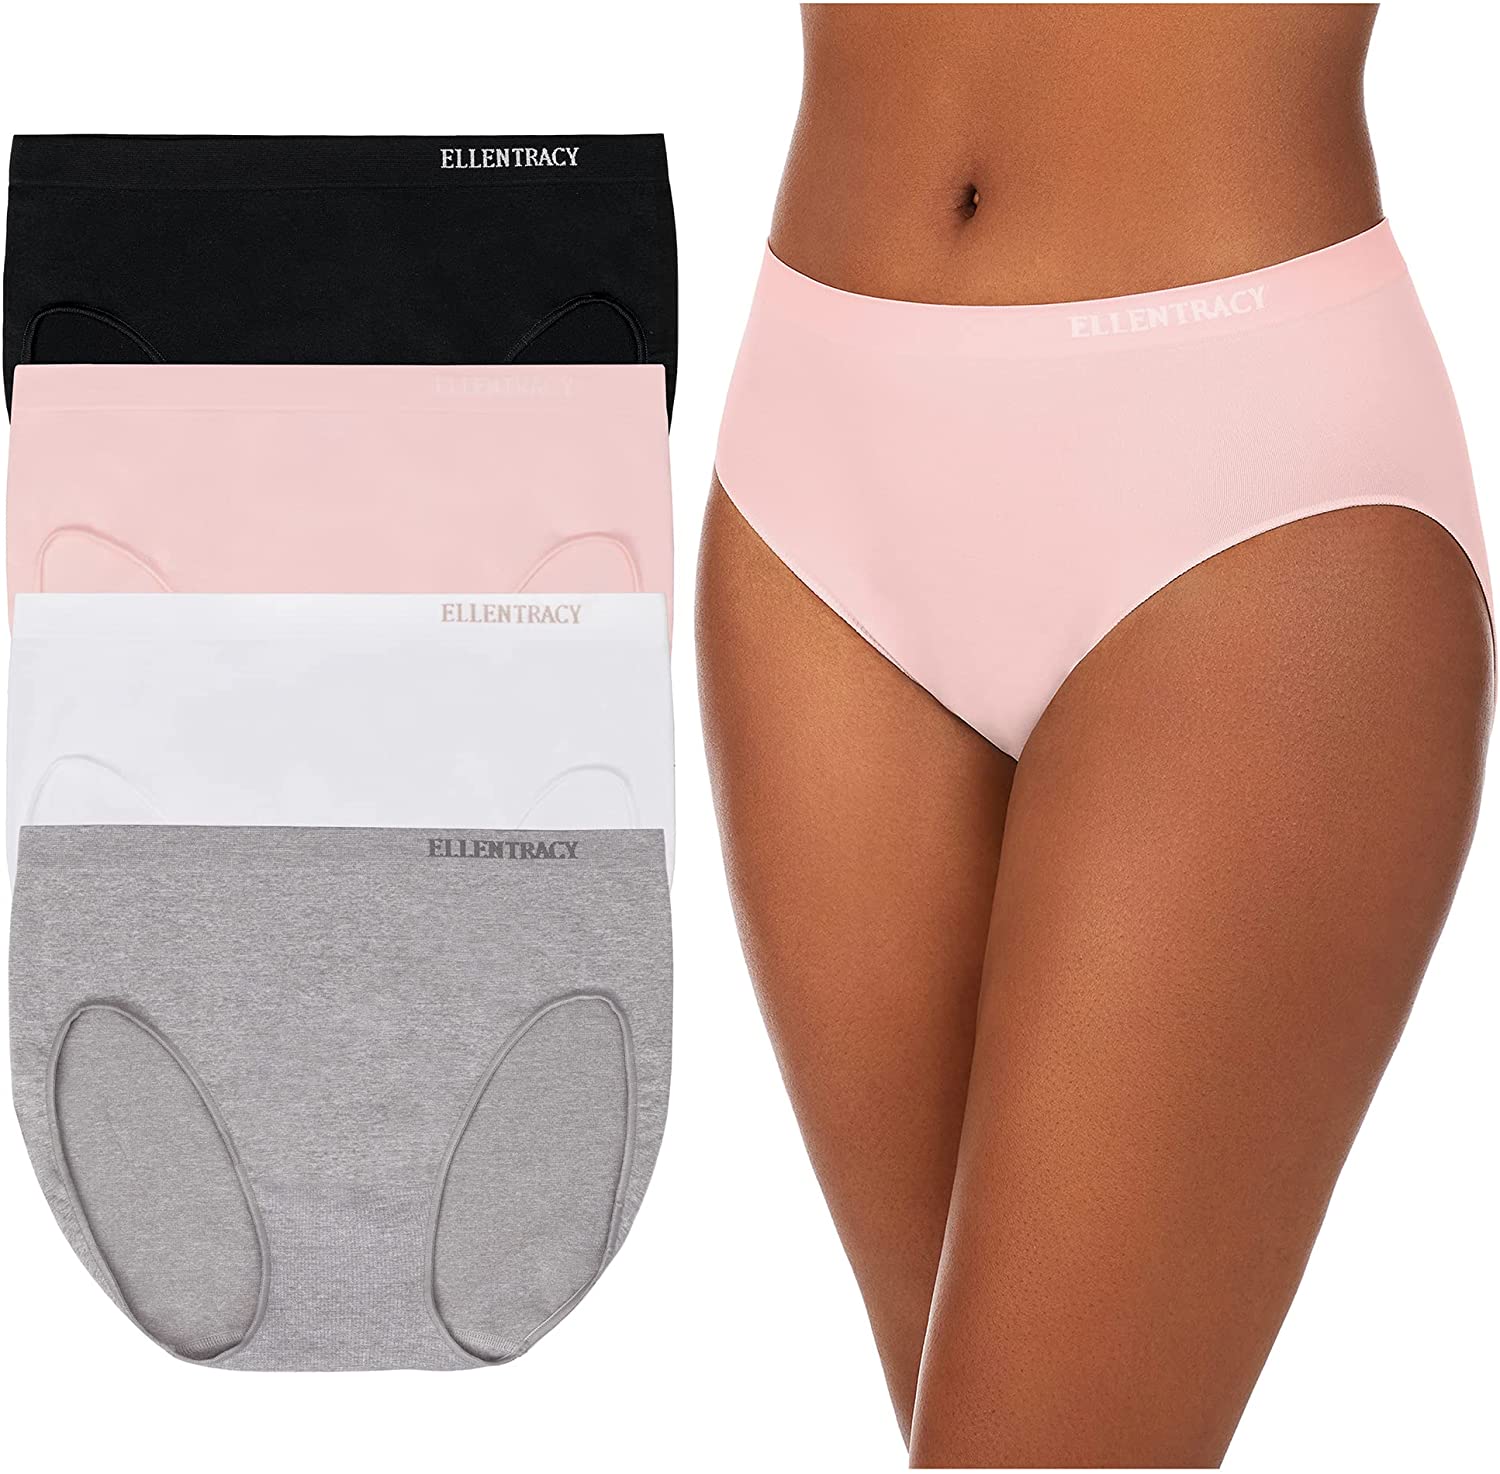  ELLEN TRACY Womens Hi Cut Brief Panties Breathable Seamless  Underwear 4-Pack Multipack